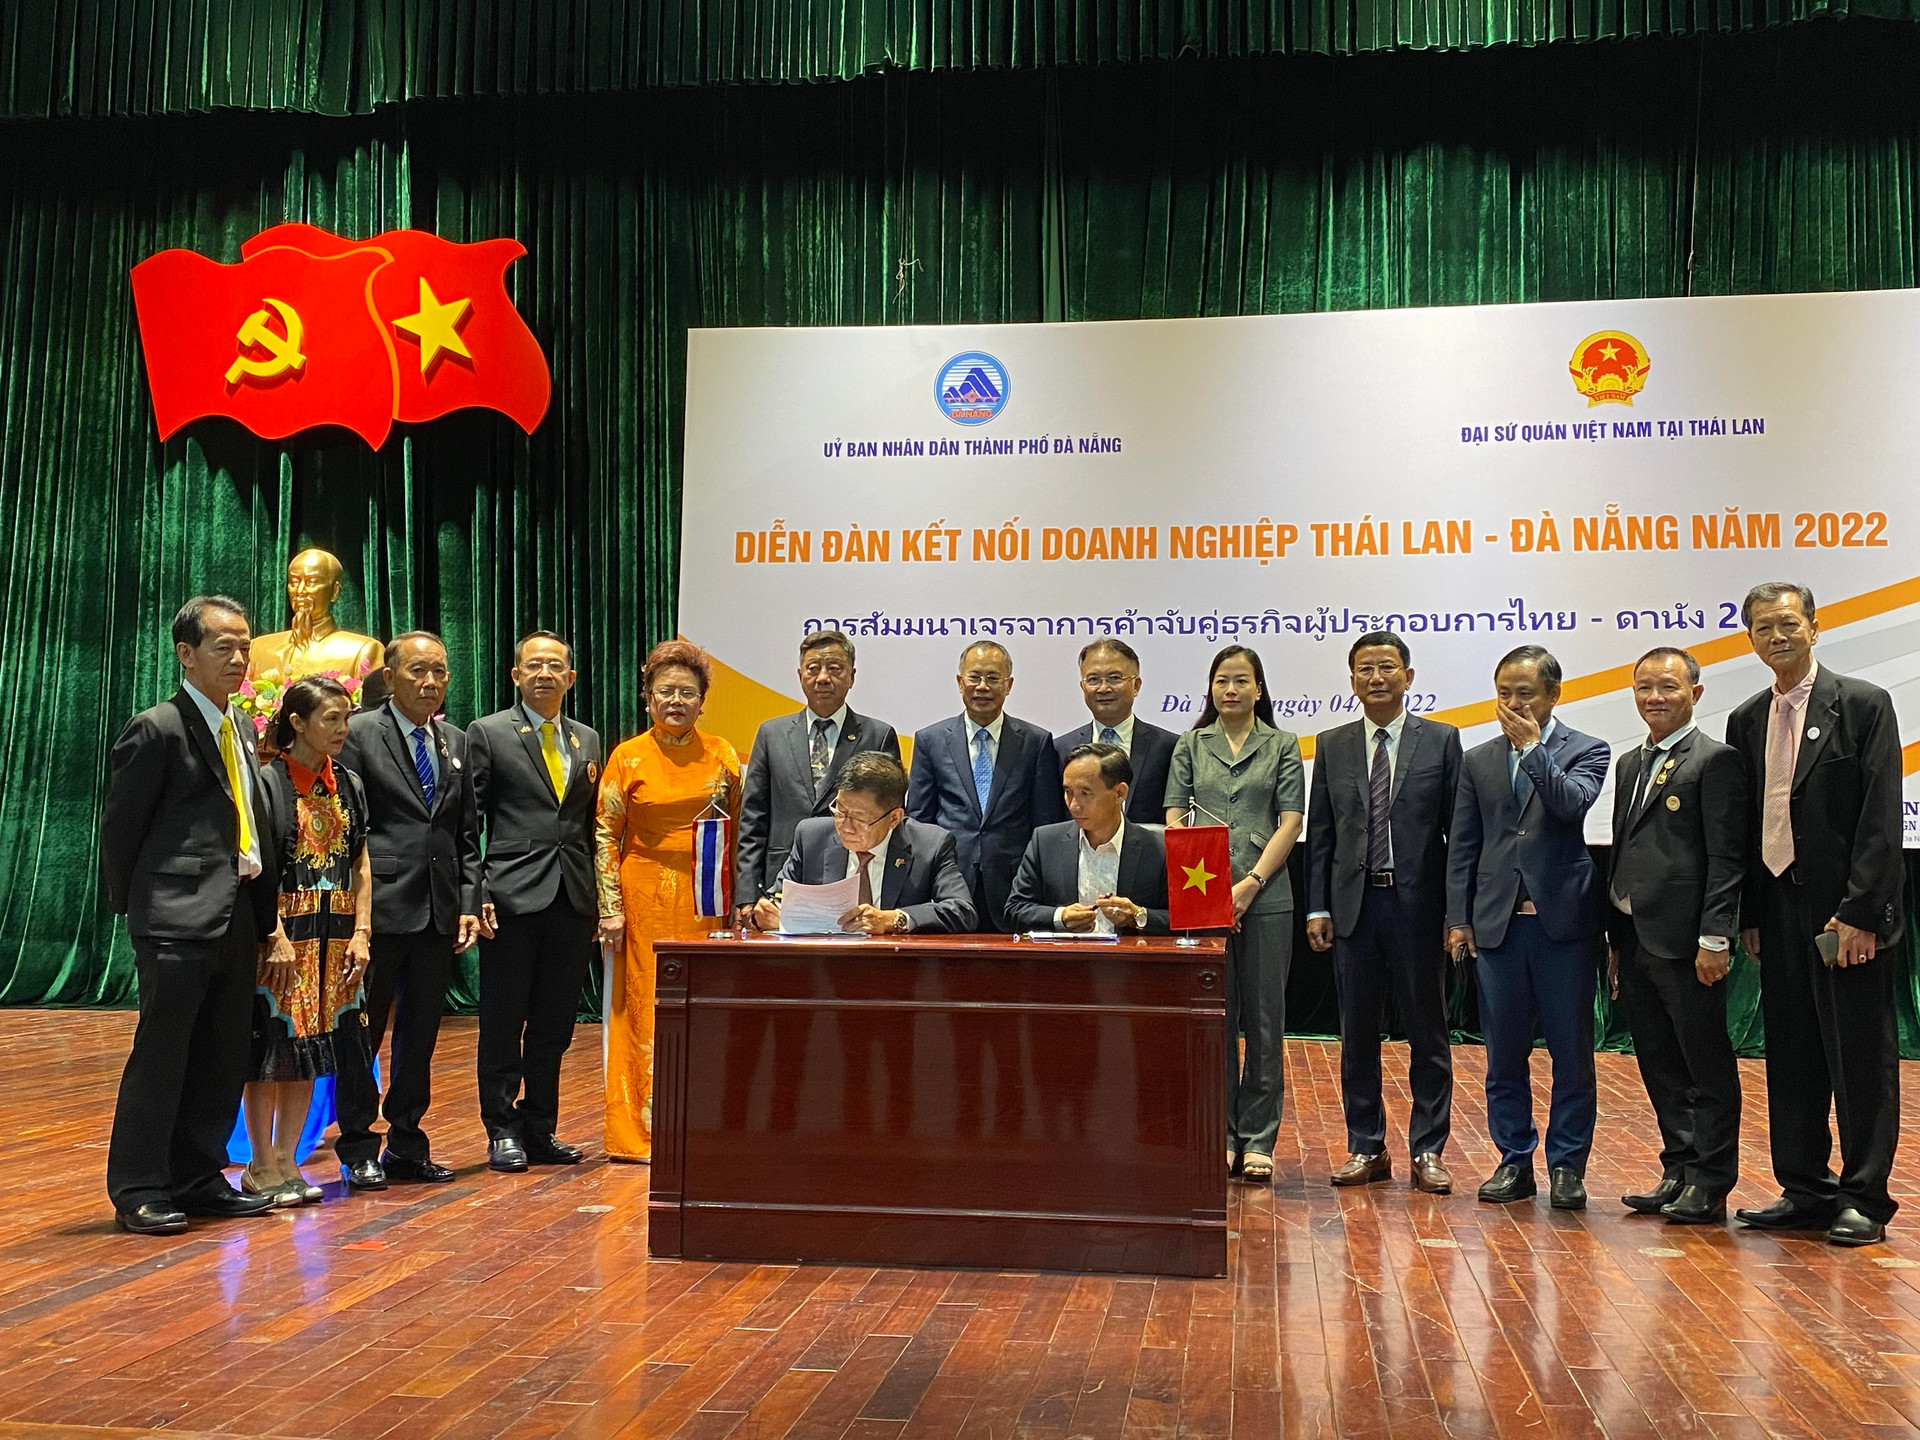 Ký kết thoả thuận hợp tác giữa doanh nghiệp kiều bào Thái Lan và doanh nghiệp Đà Nẵng